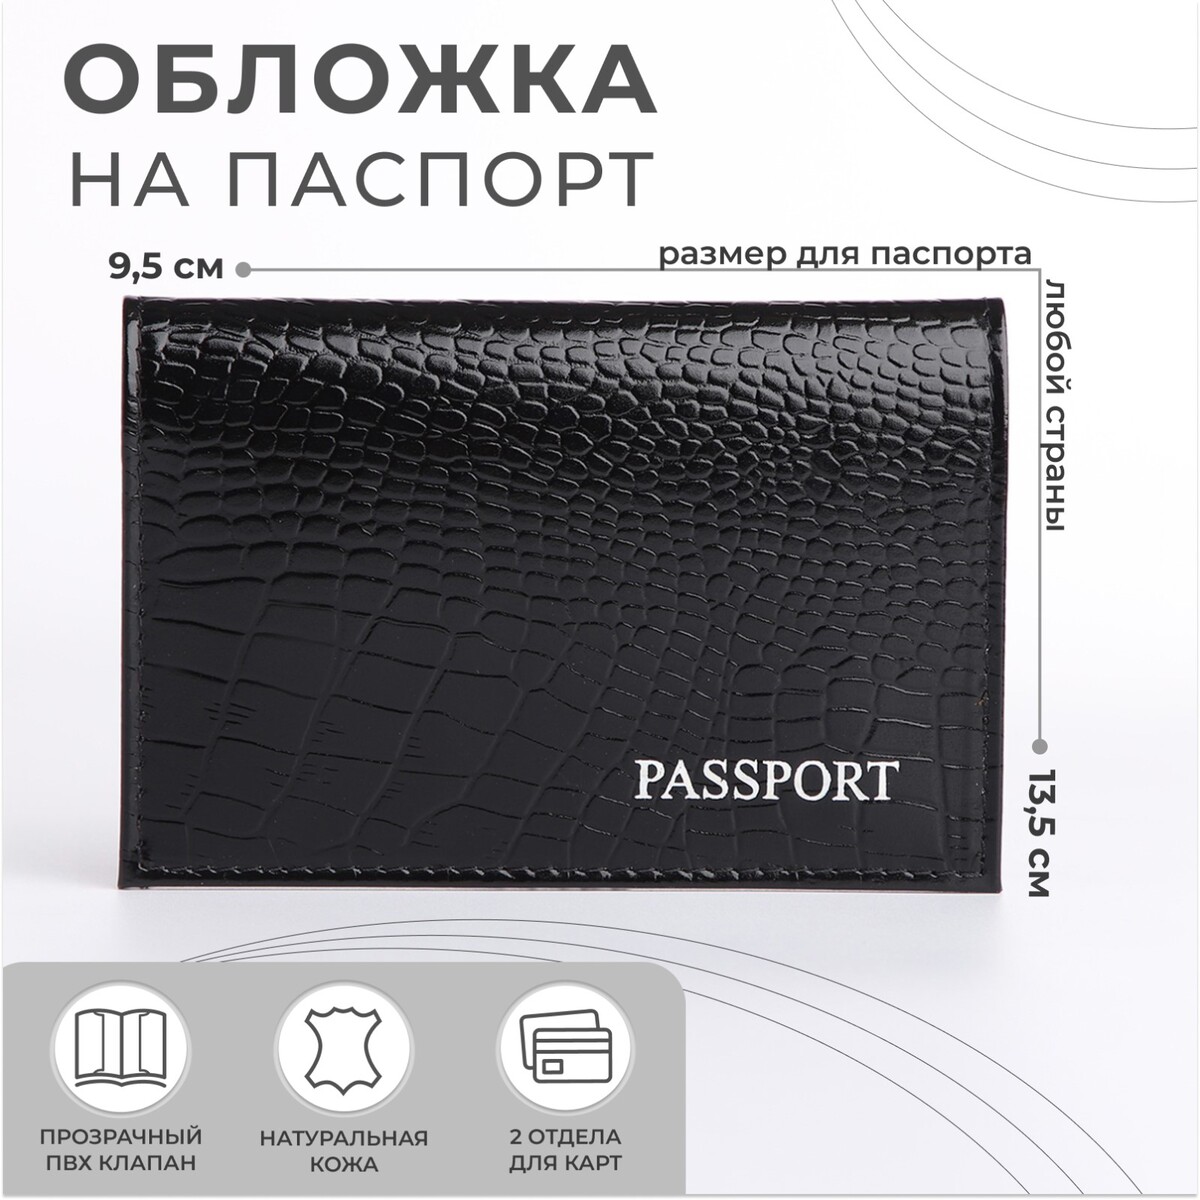 Обложка для паспорта, тиснение, крокодил, цвет черный крокодил